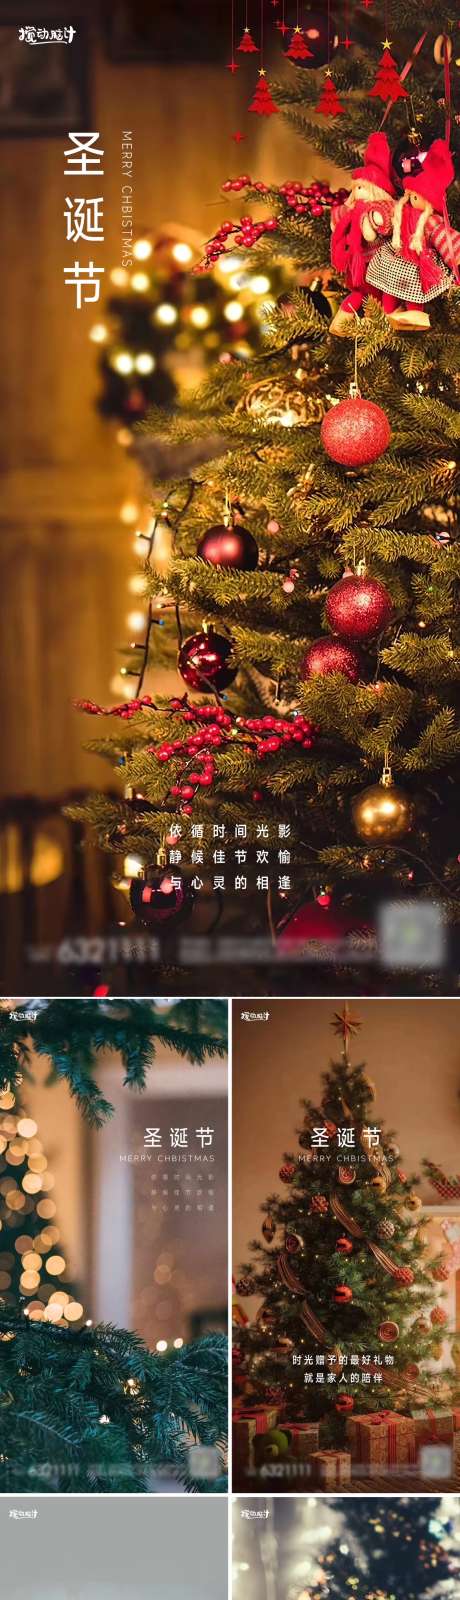 地产圣诞节海报_源文件下载_PSD格式_1169X5059像素-圣诞老人,平安夜,新年,礼物,圣诞节,地产,圣诞树-作品编号:2022100412549939-源文件库-ywjfx.cn